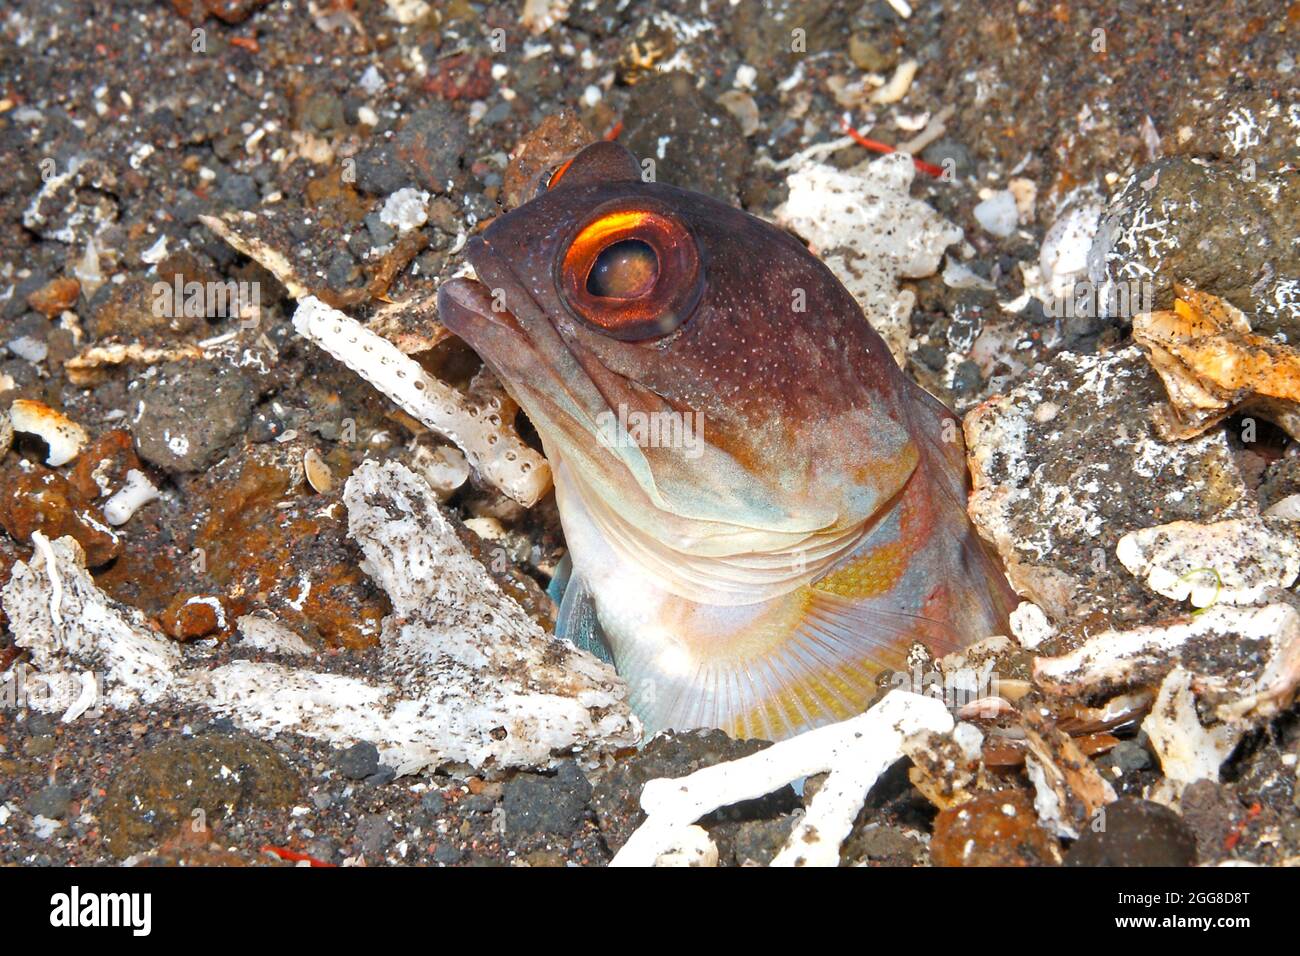 Gelbbarren-Jawfish, auch bekannt als Gold-Specs-Jawfish, Opistognathus randalli, späht aus dem Bau heraus. Tulamben, Bali, Indonesien Stockfoto